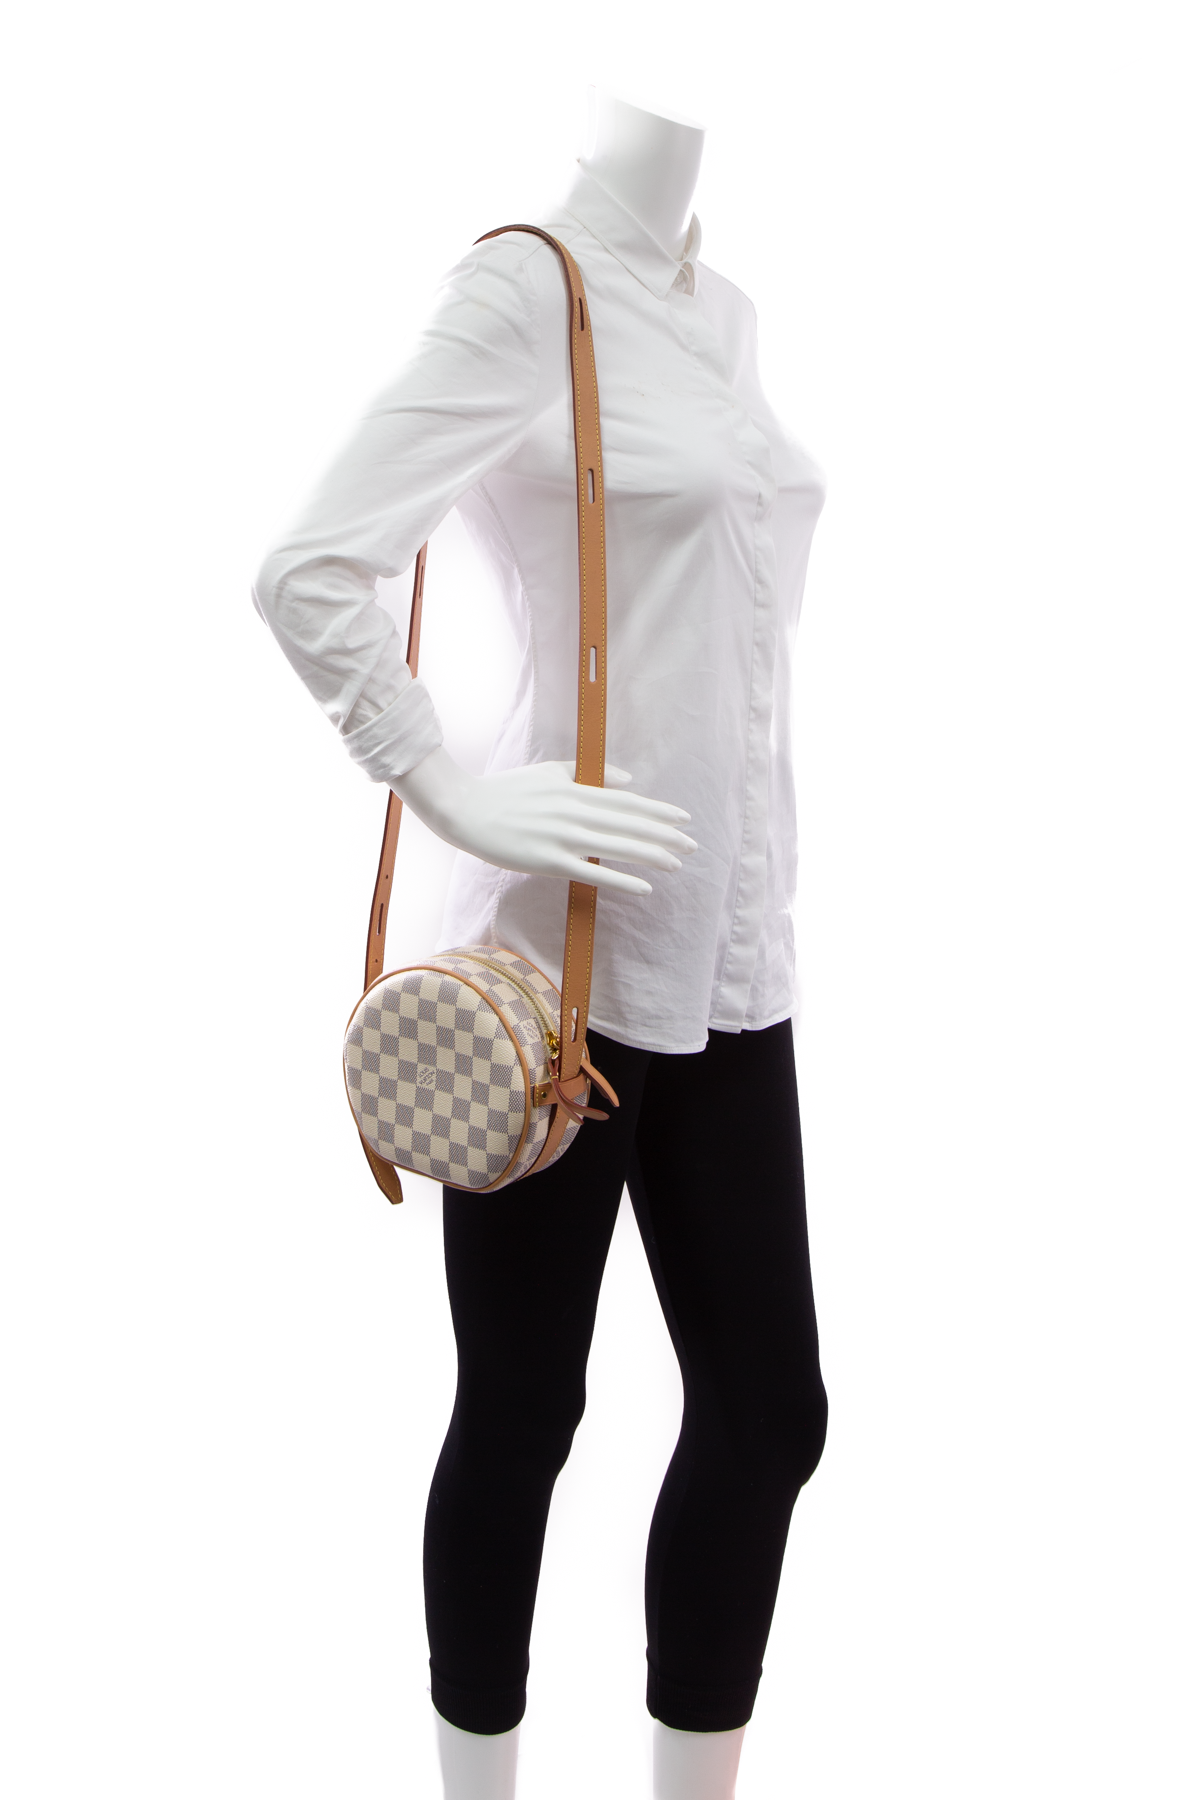 Louis Vuitton Boite Chapeau Souple PM Bag - Couture USA